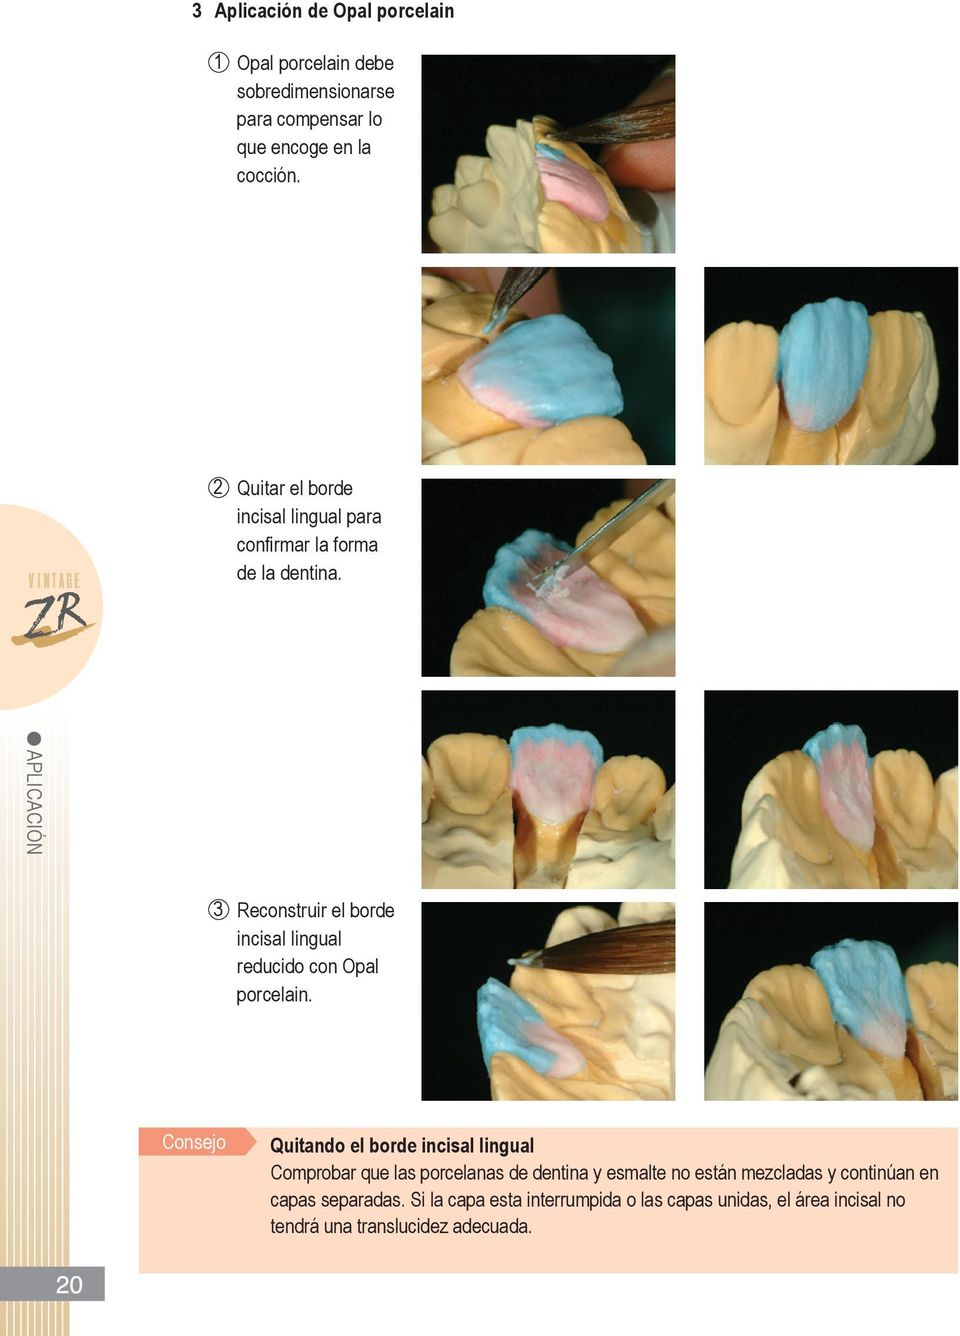 APLICACIóN 3 Reconstruir el borde incisal lingual reducido con opal porcelain.